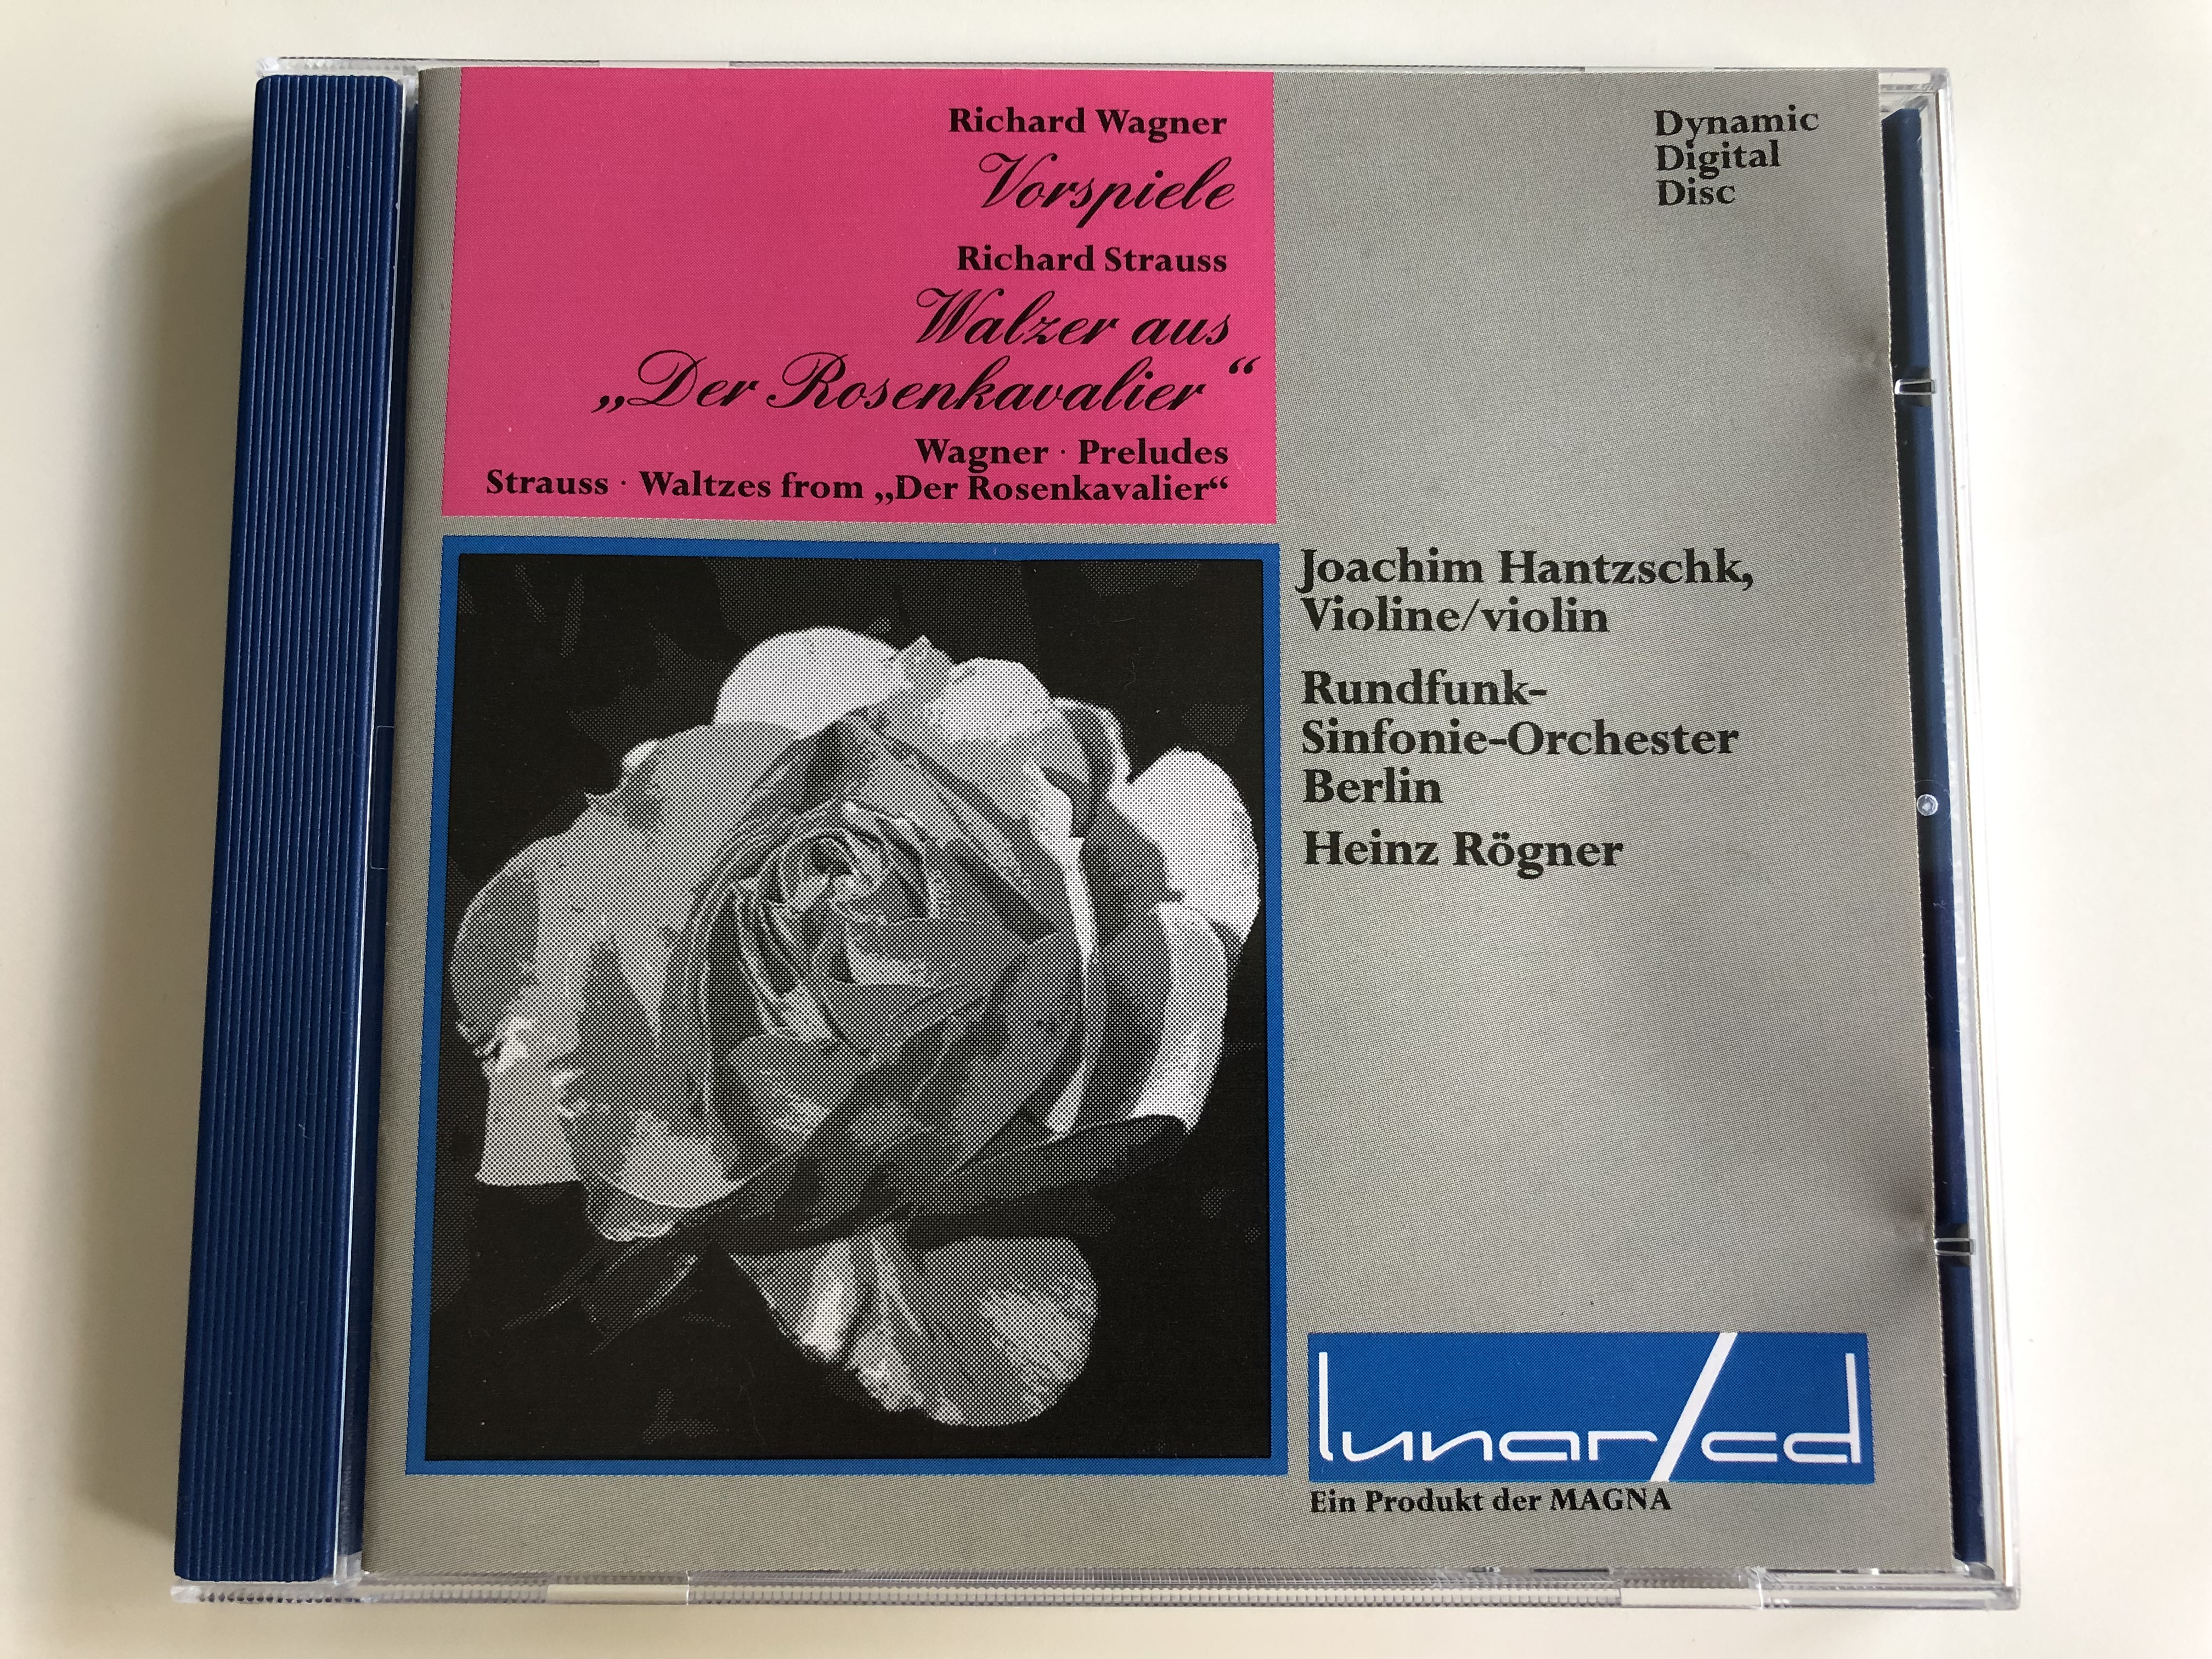 richard-wagner-vorspiele-richard-strauss-walzer-aus-der-rosenkavalier-wagner-preludes-joachim-hantzschk-violin-rundfunk-sinfonie-orchester-berlin-conducted-by-heinz-r-gner-audio-cd-1990-1-.jpg